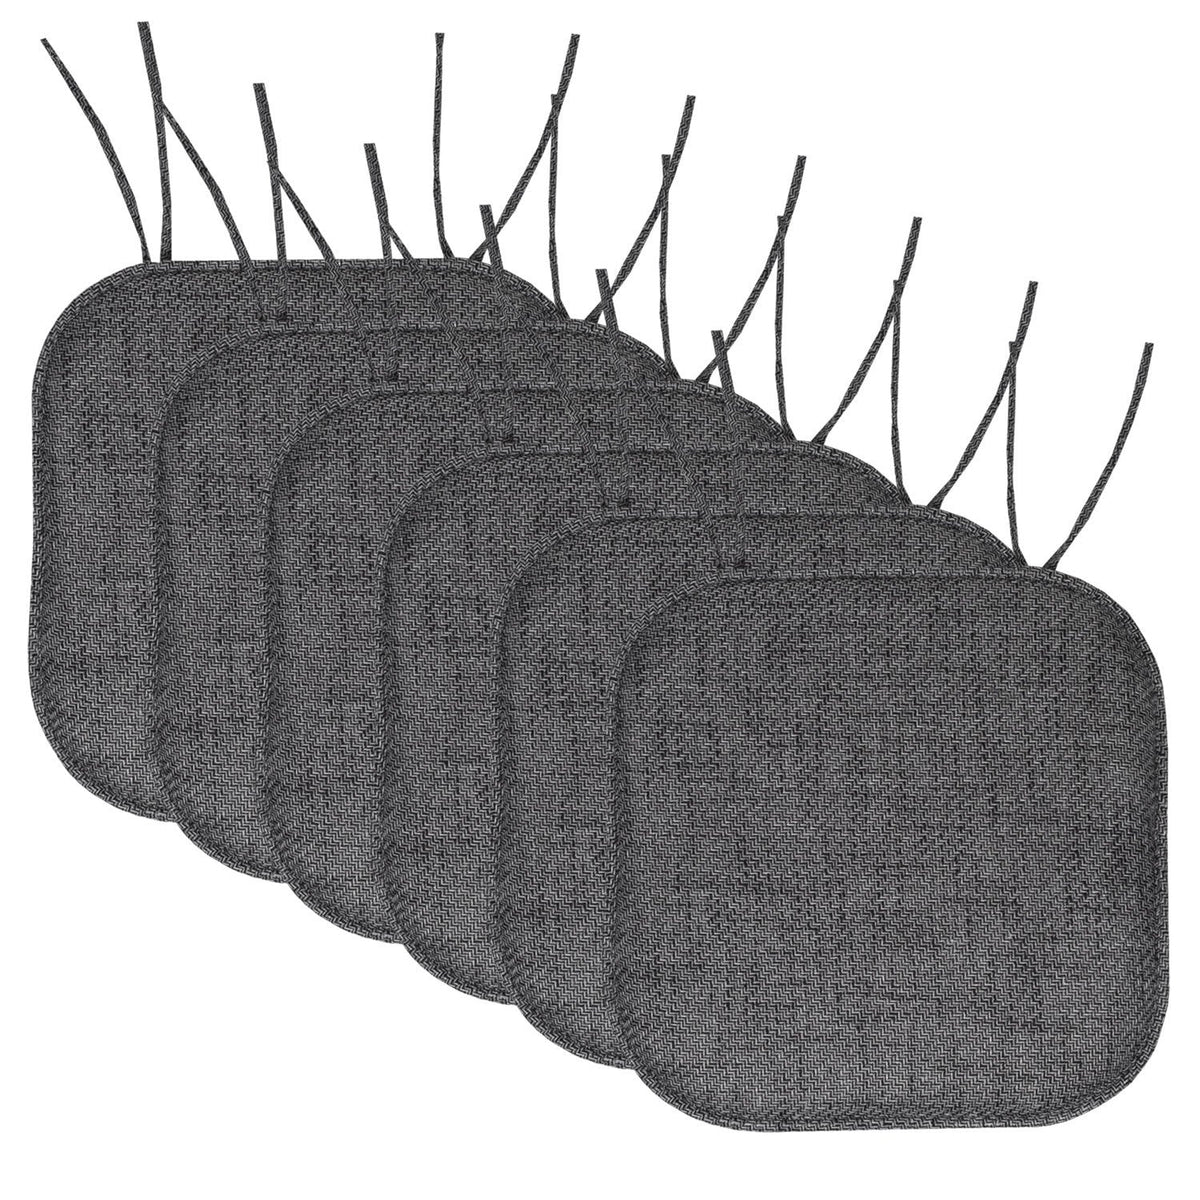 Herringbone Chair Cushion Set with Ties Black 6-Pack